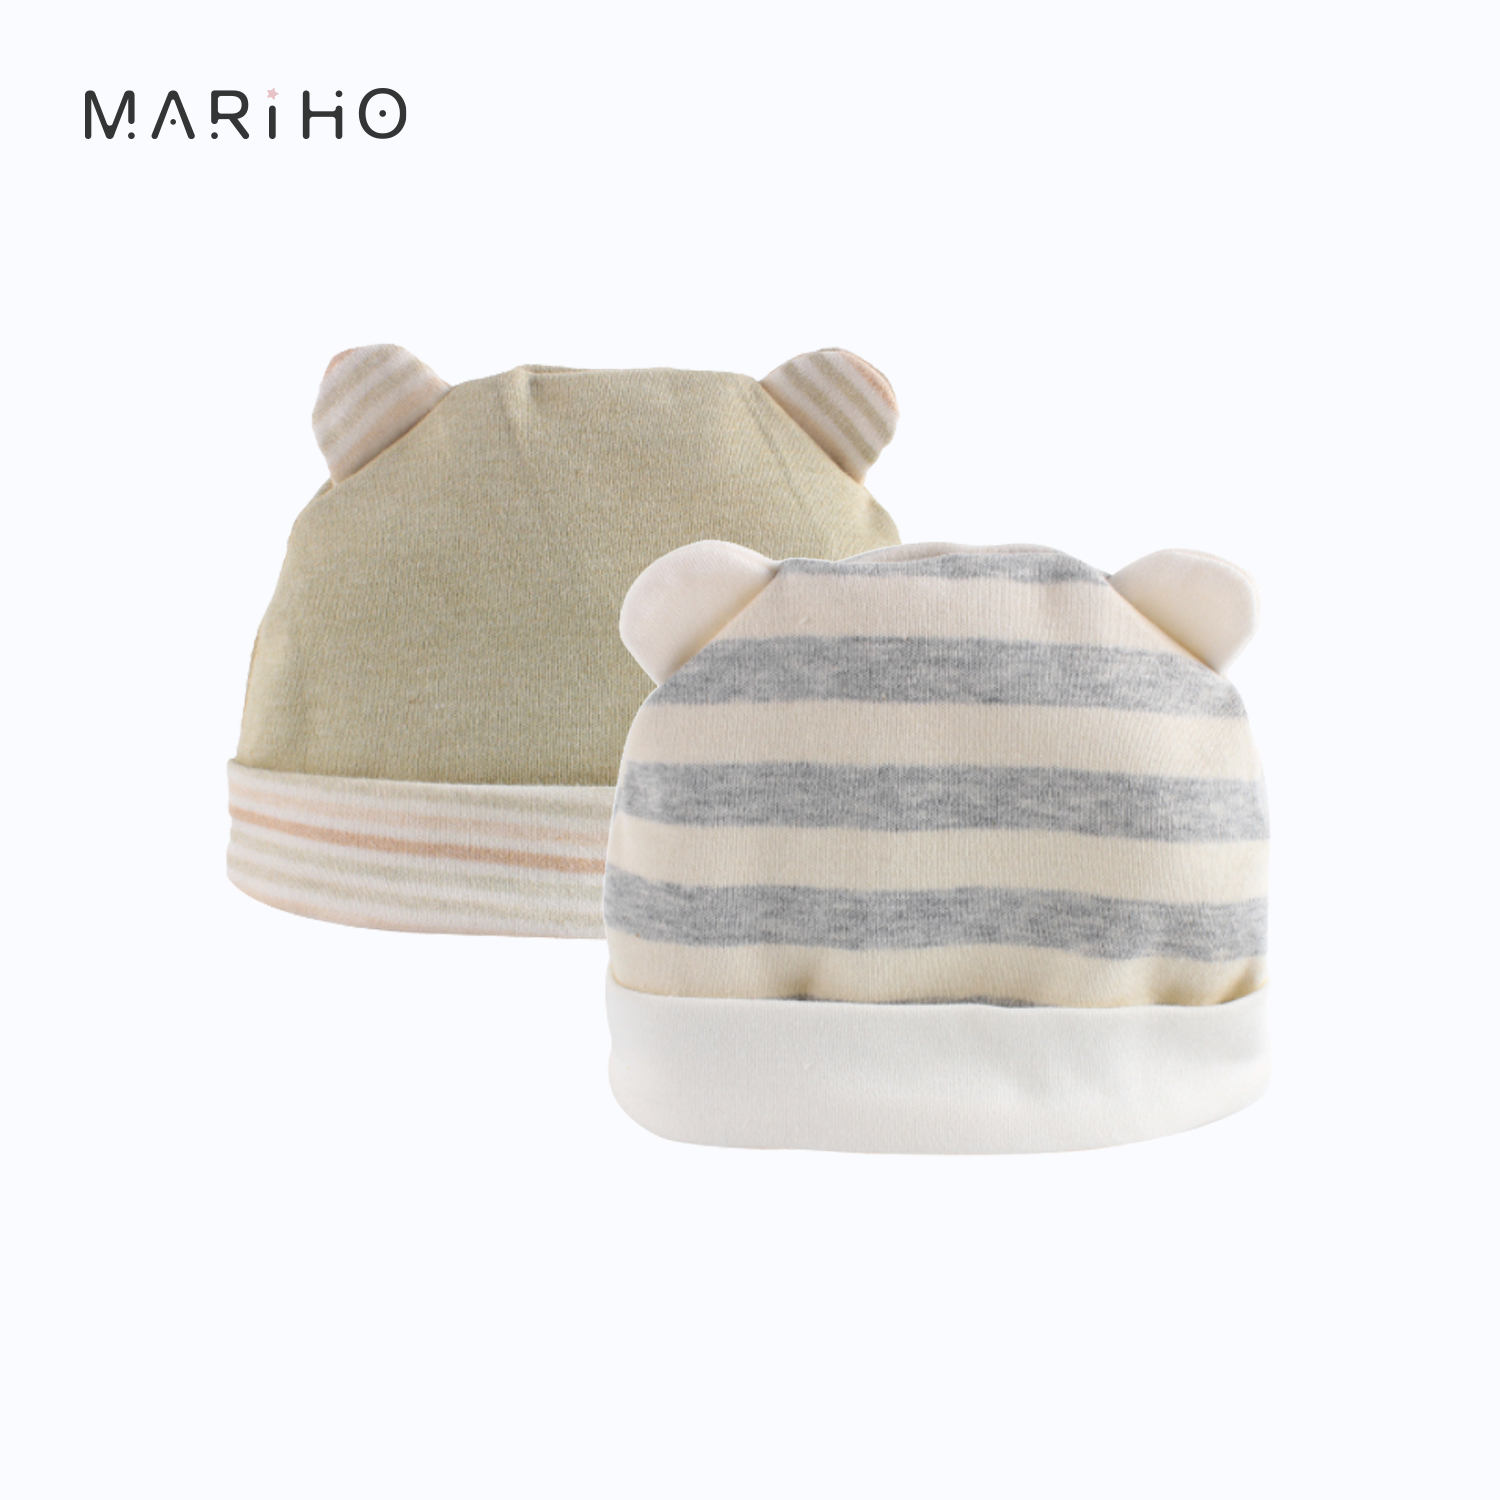 【Mariho】天然彩棉熊熊胎帽